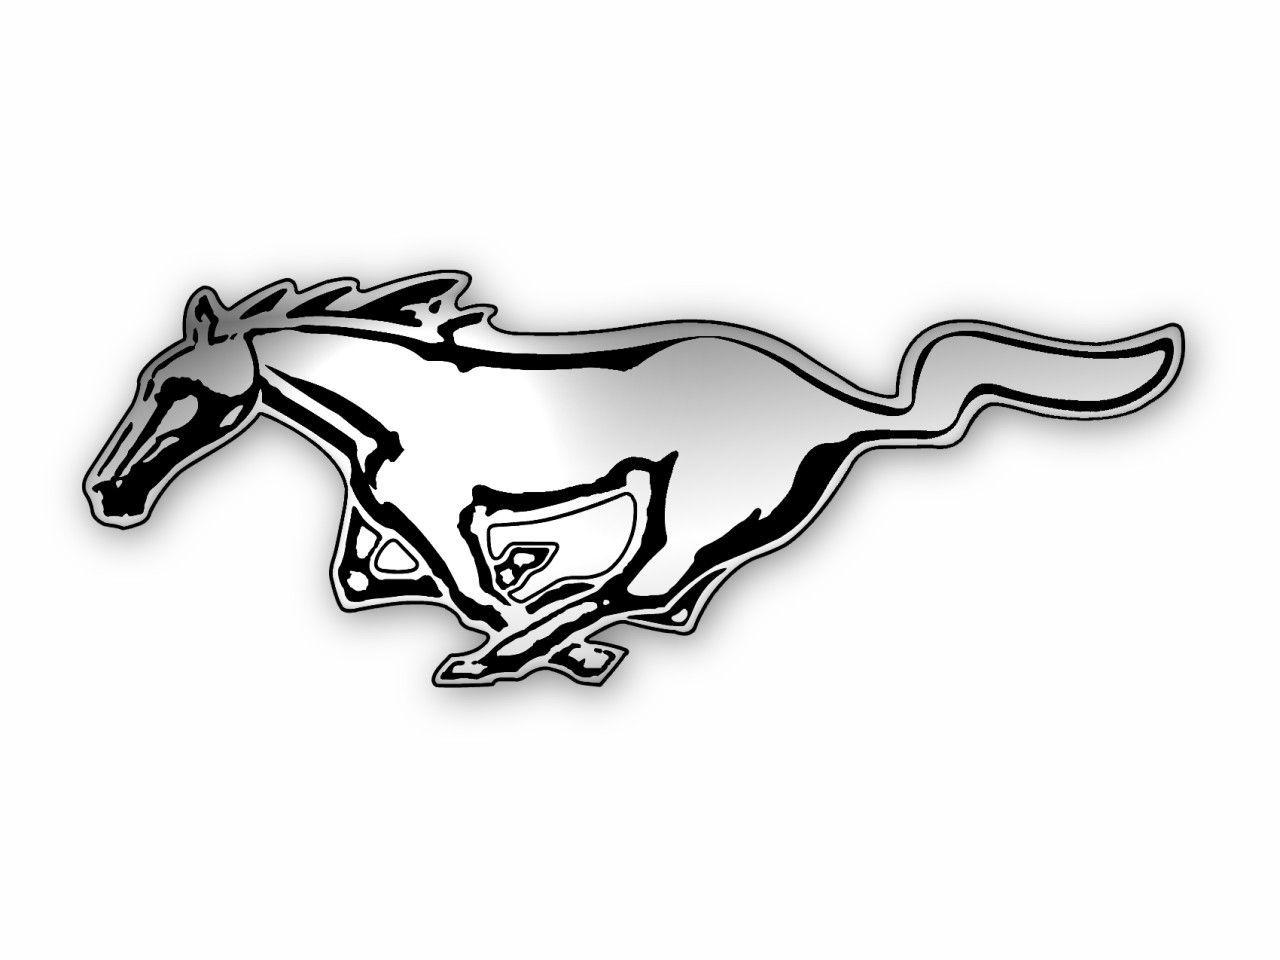 Stallion Car Logo - logo mustang | Mustangs | Pinterest | Mustang, Mustang cars and ...